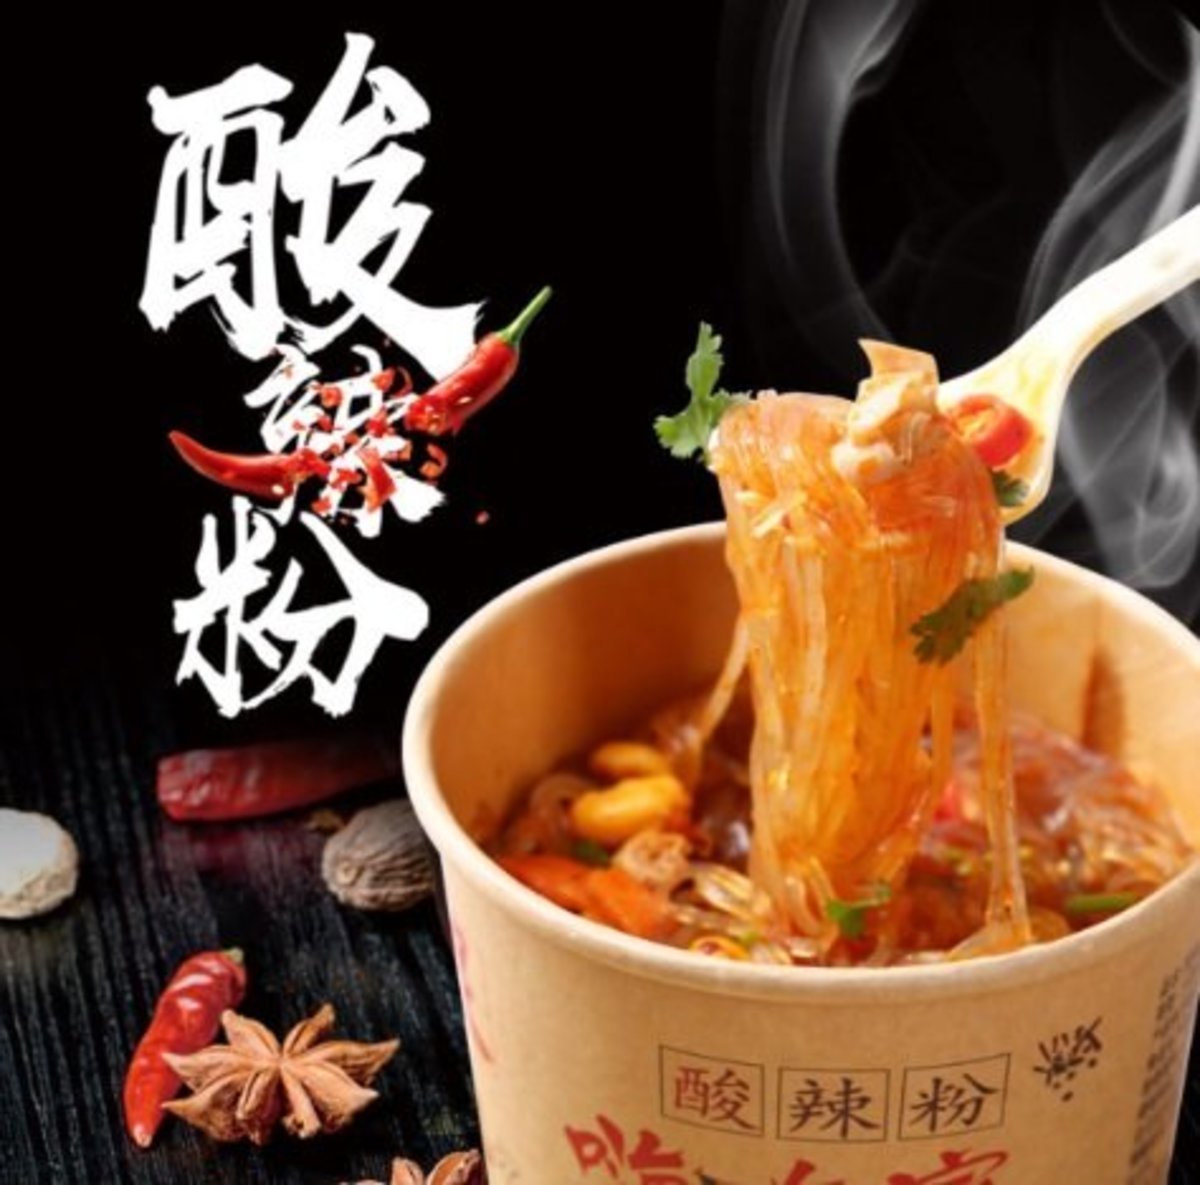 Chongqing Hot & Sour Mung Bean Thread - 1pc